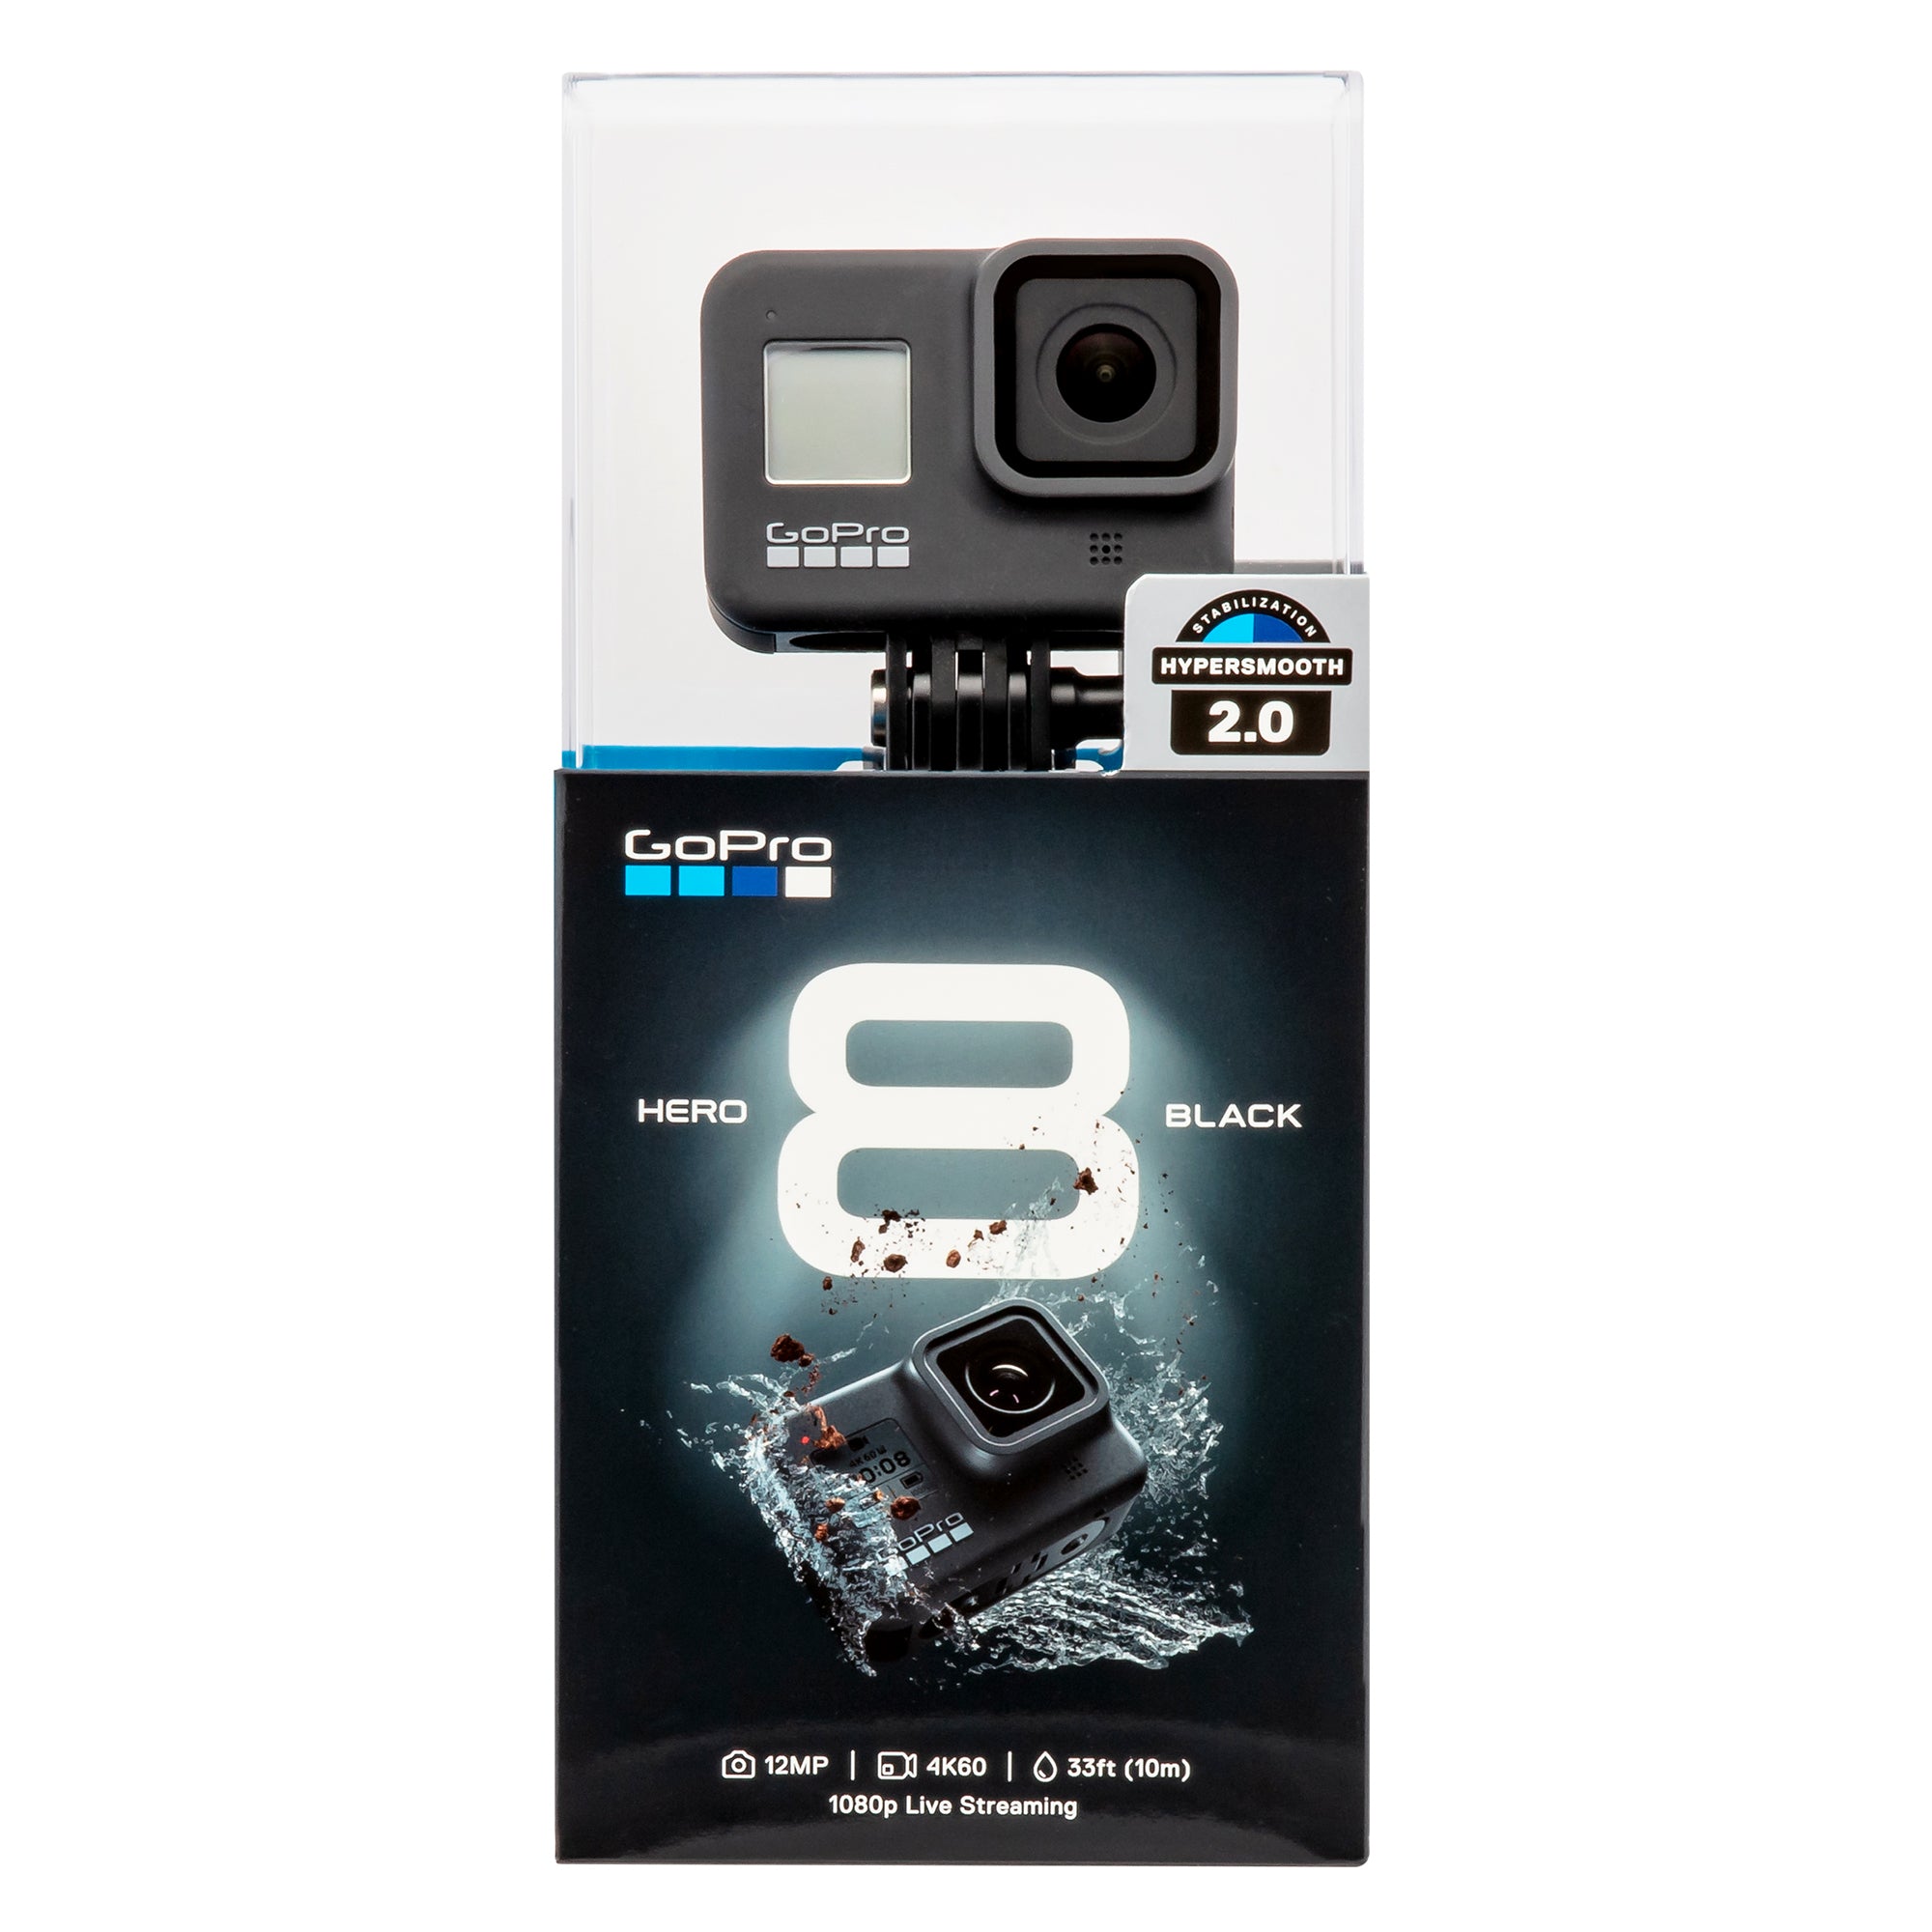 GoPro HERO 8 Black 4K Waterproof Action Camera with Lexar 633x 